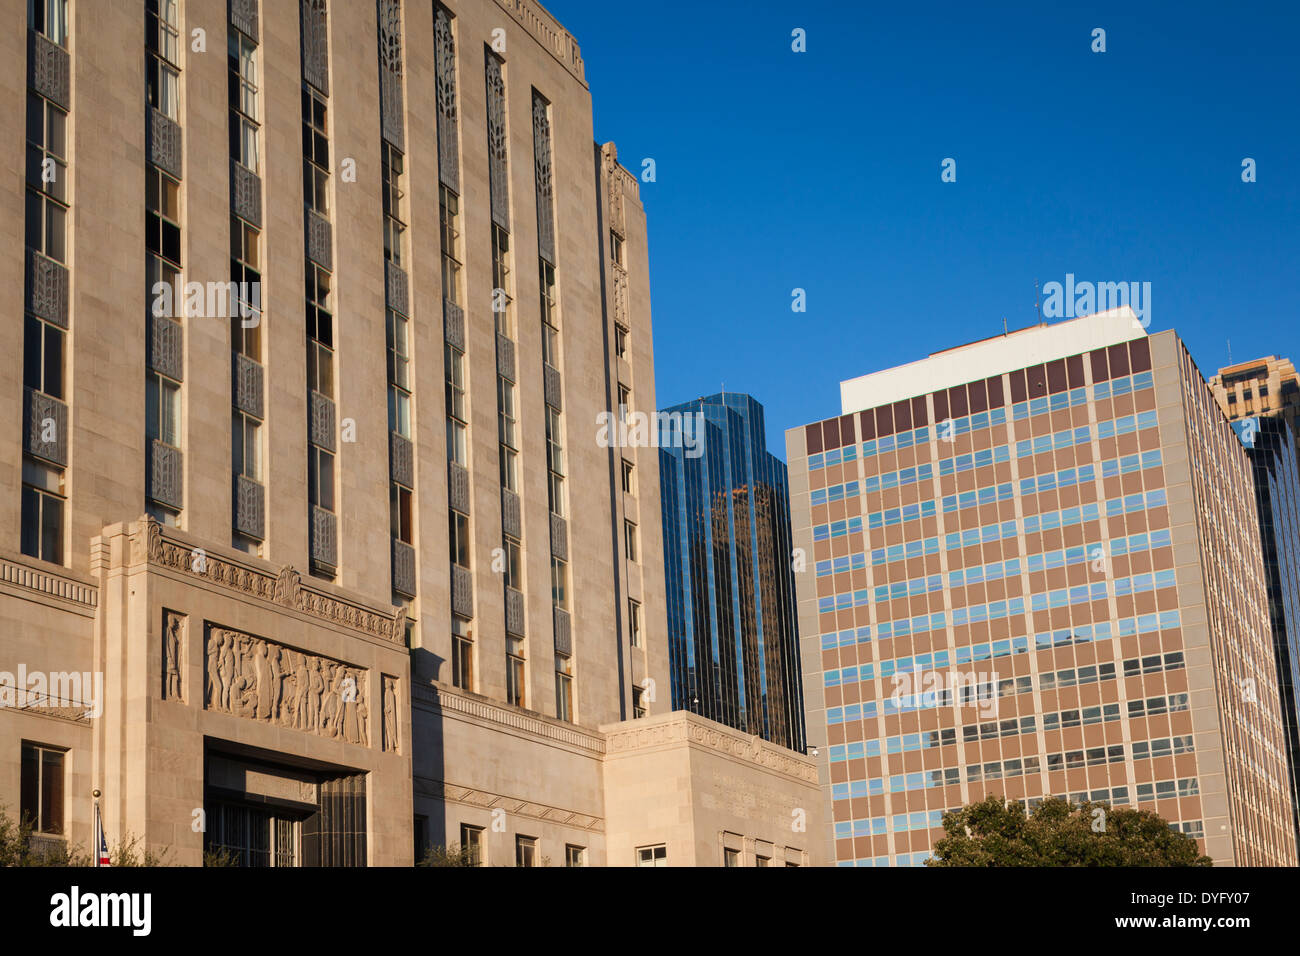 USA, Oklahoma, Oklahoma City, city hall Stock Photo